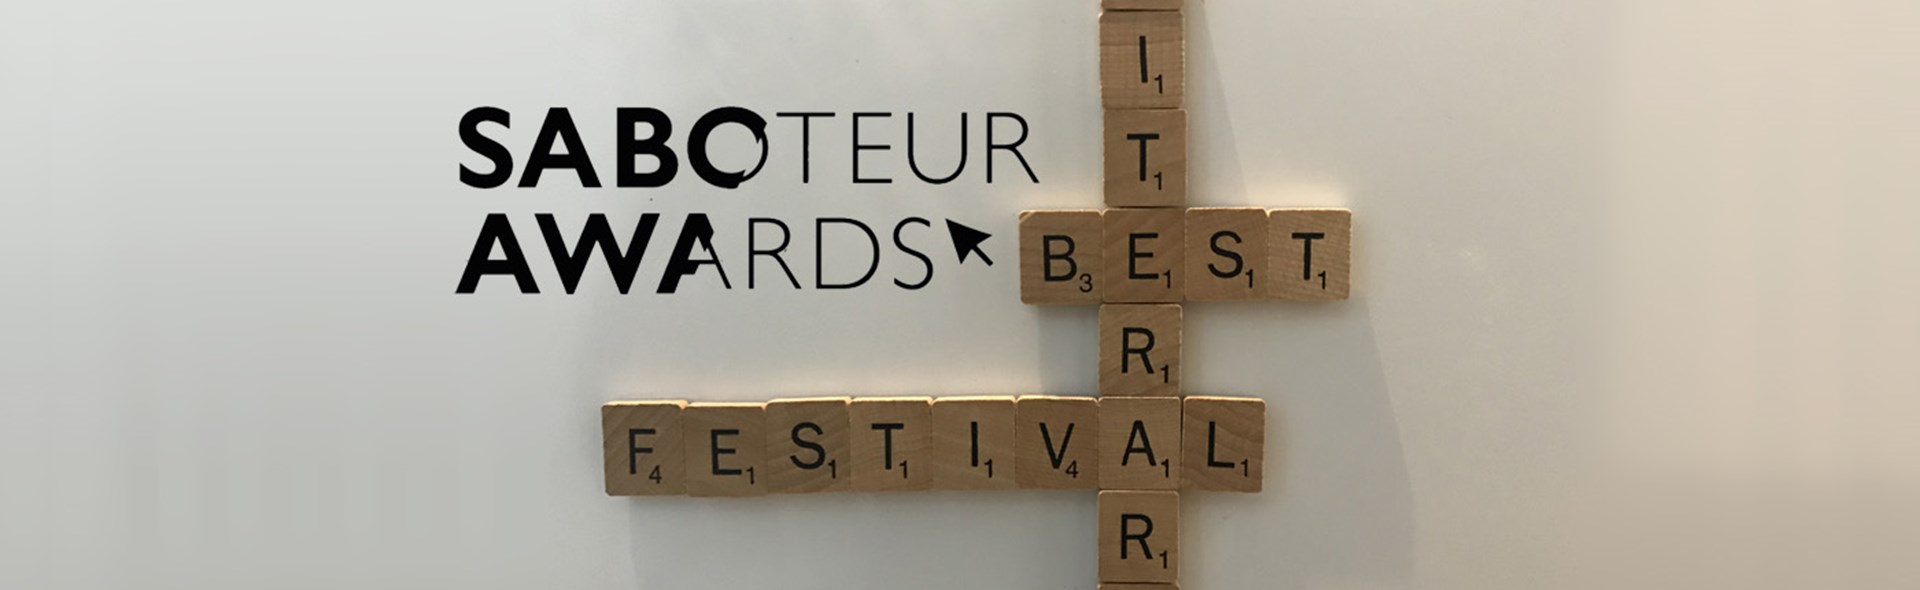 Leeds Lit Fest shortlisted for Best Literary Festival in the national Saboteur Awards